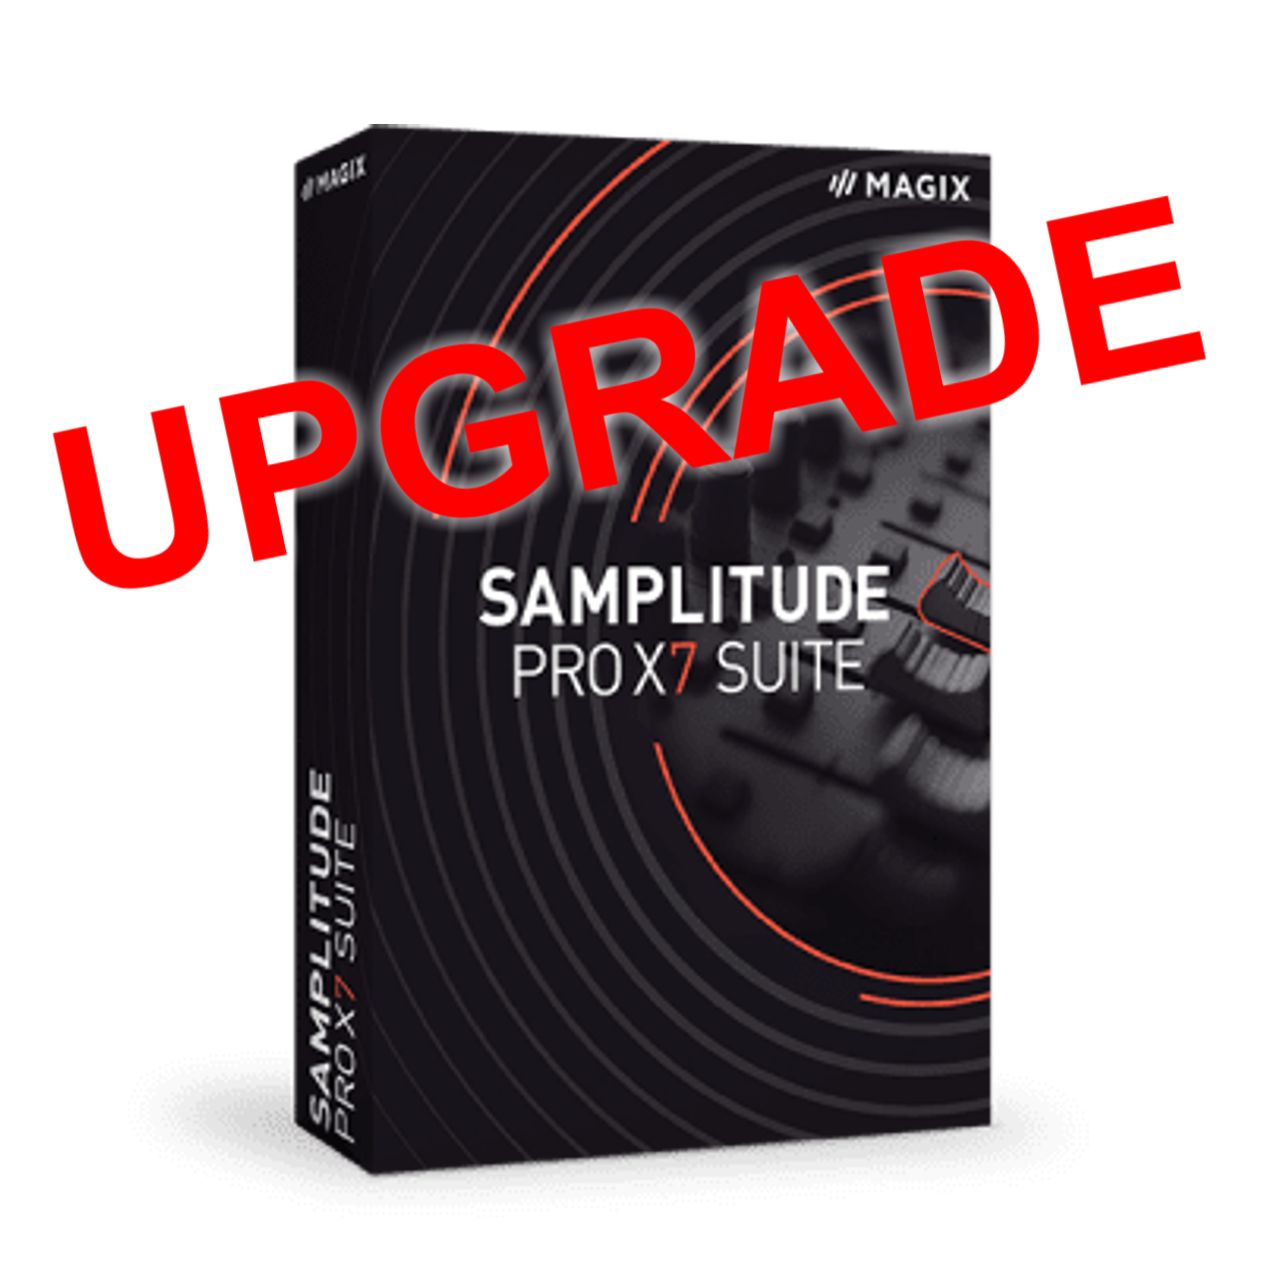 Samplitude Pro X7 Suite actualizaciones